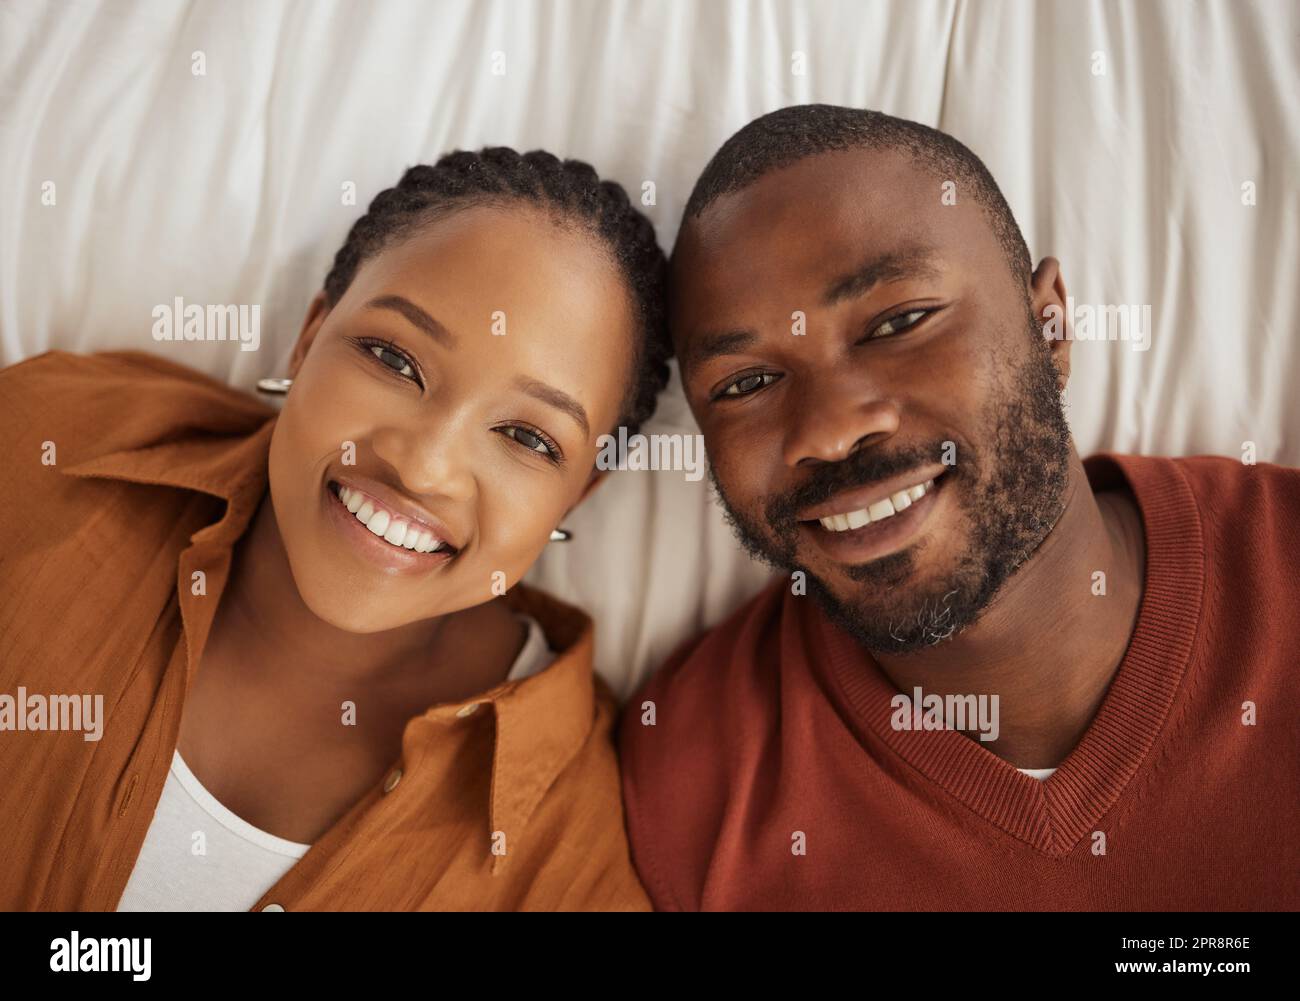 Portrait d'un afro-américain aimant allongé ensemble sur un lit, d'en haut. Joyeux jeune homme et femme souriant et regardant l'appareil photo Banque D'Images